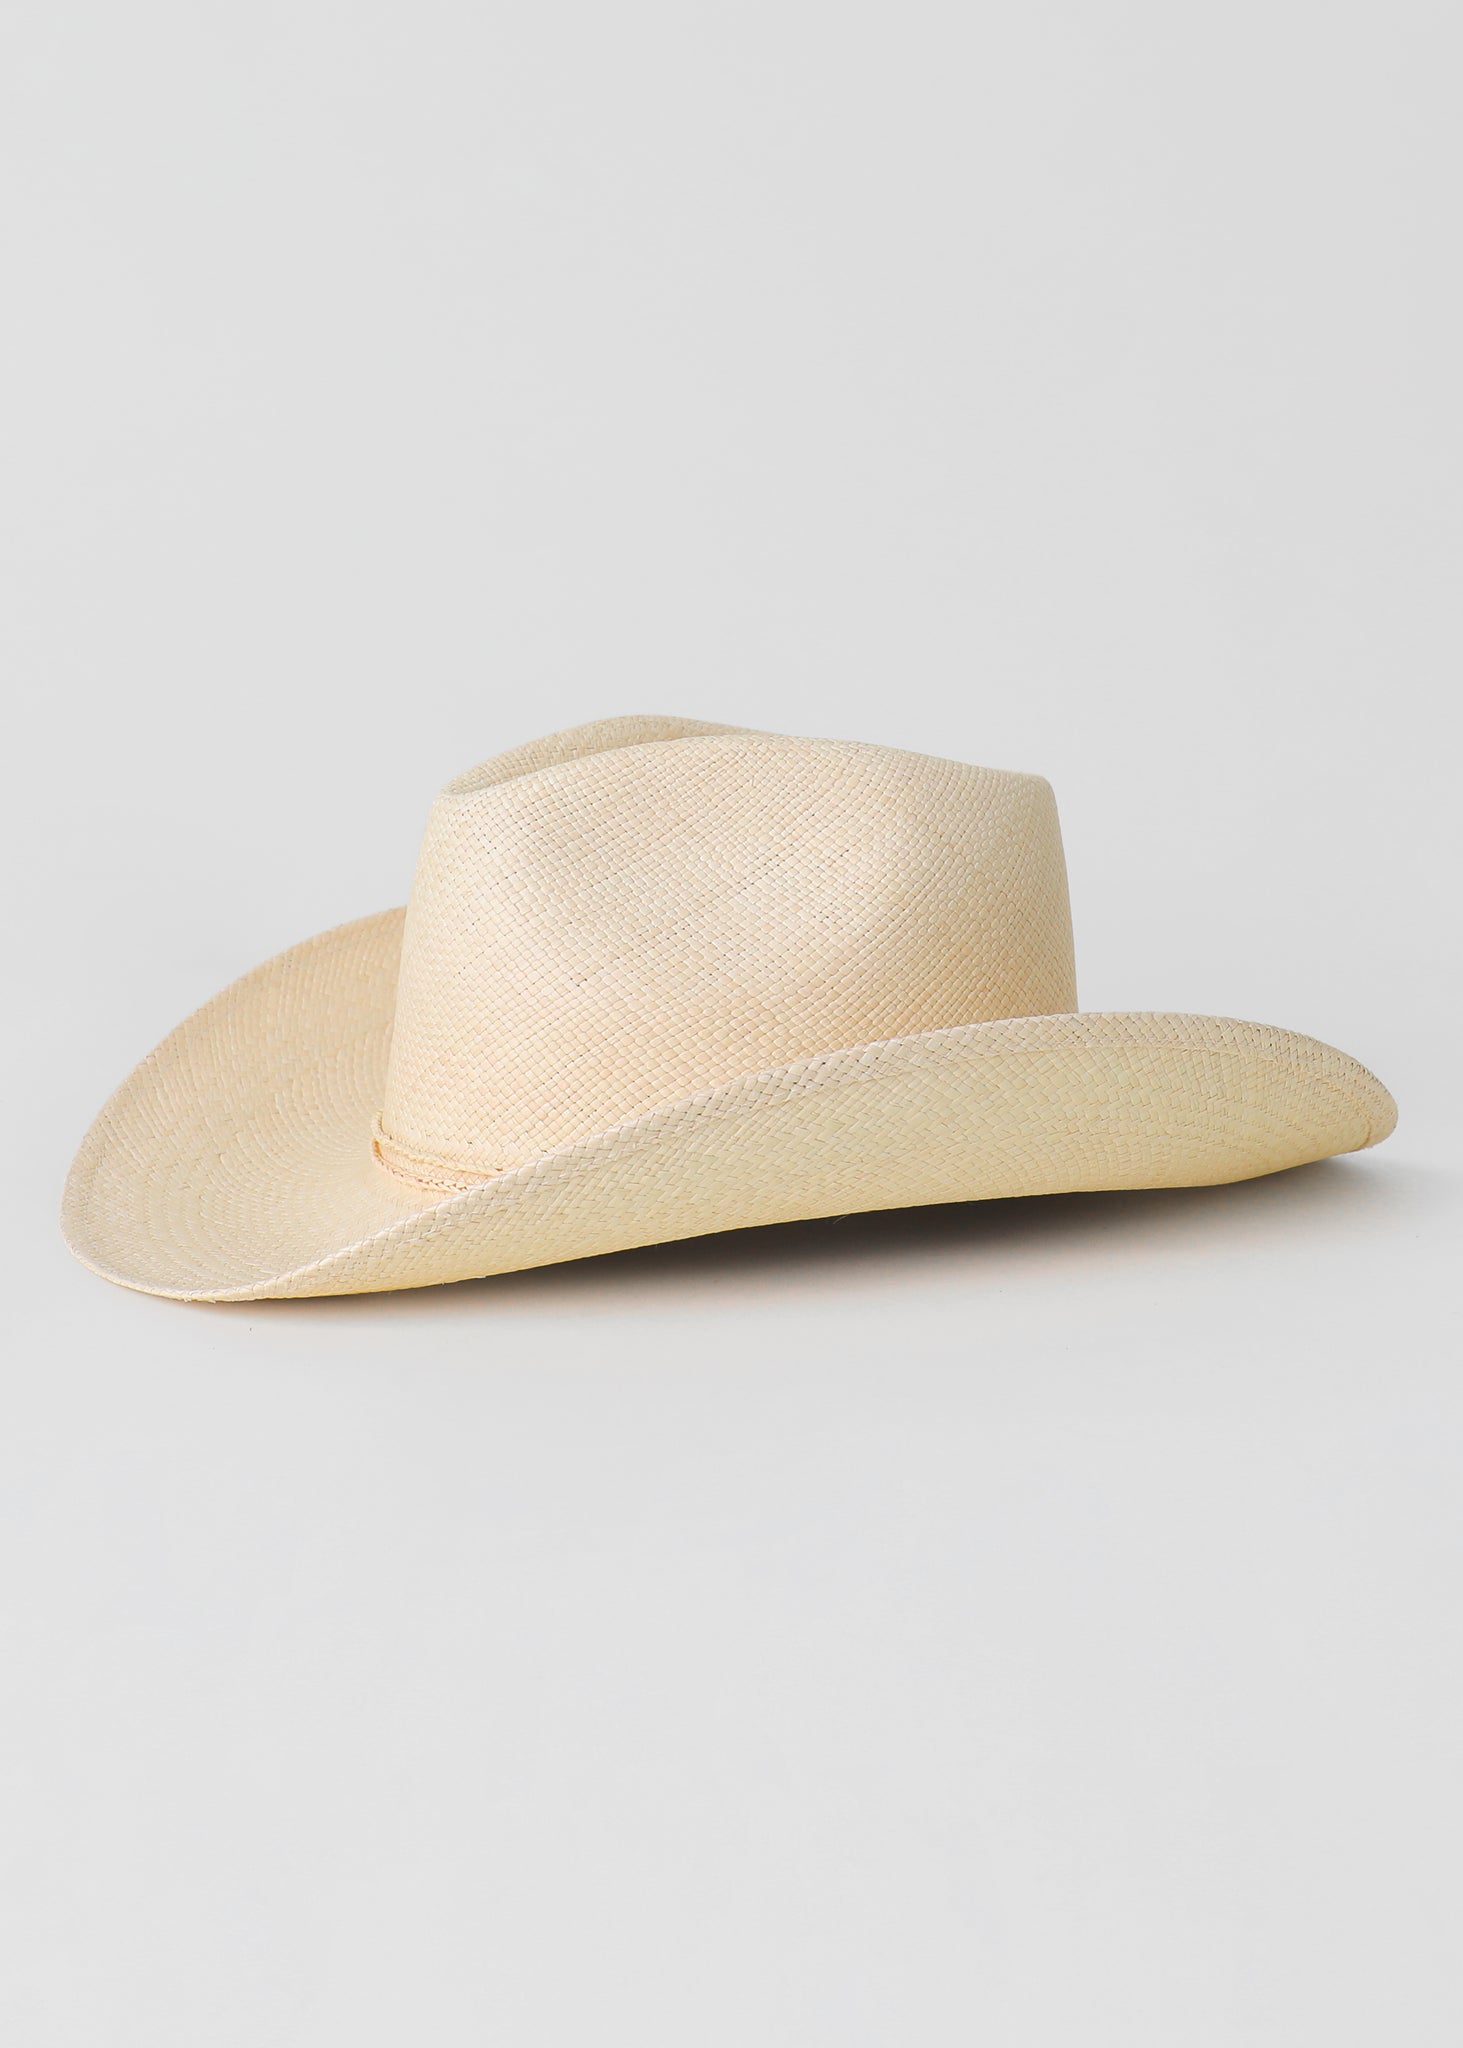 best womens straw cowboy hat